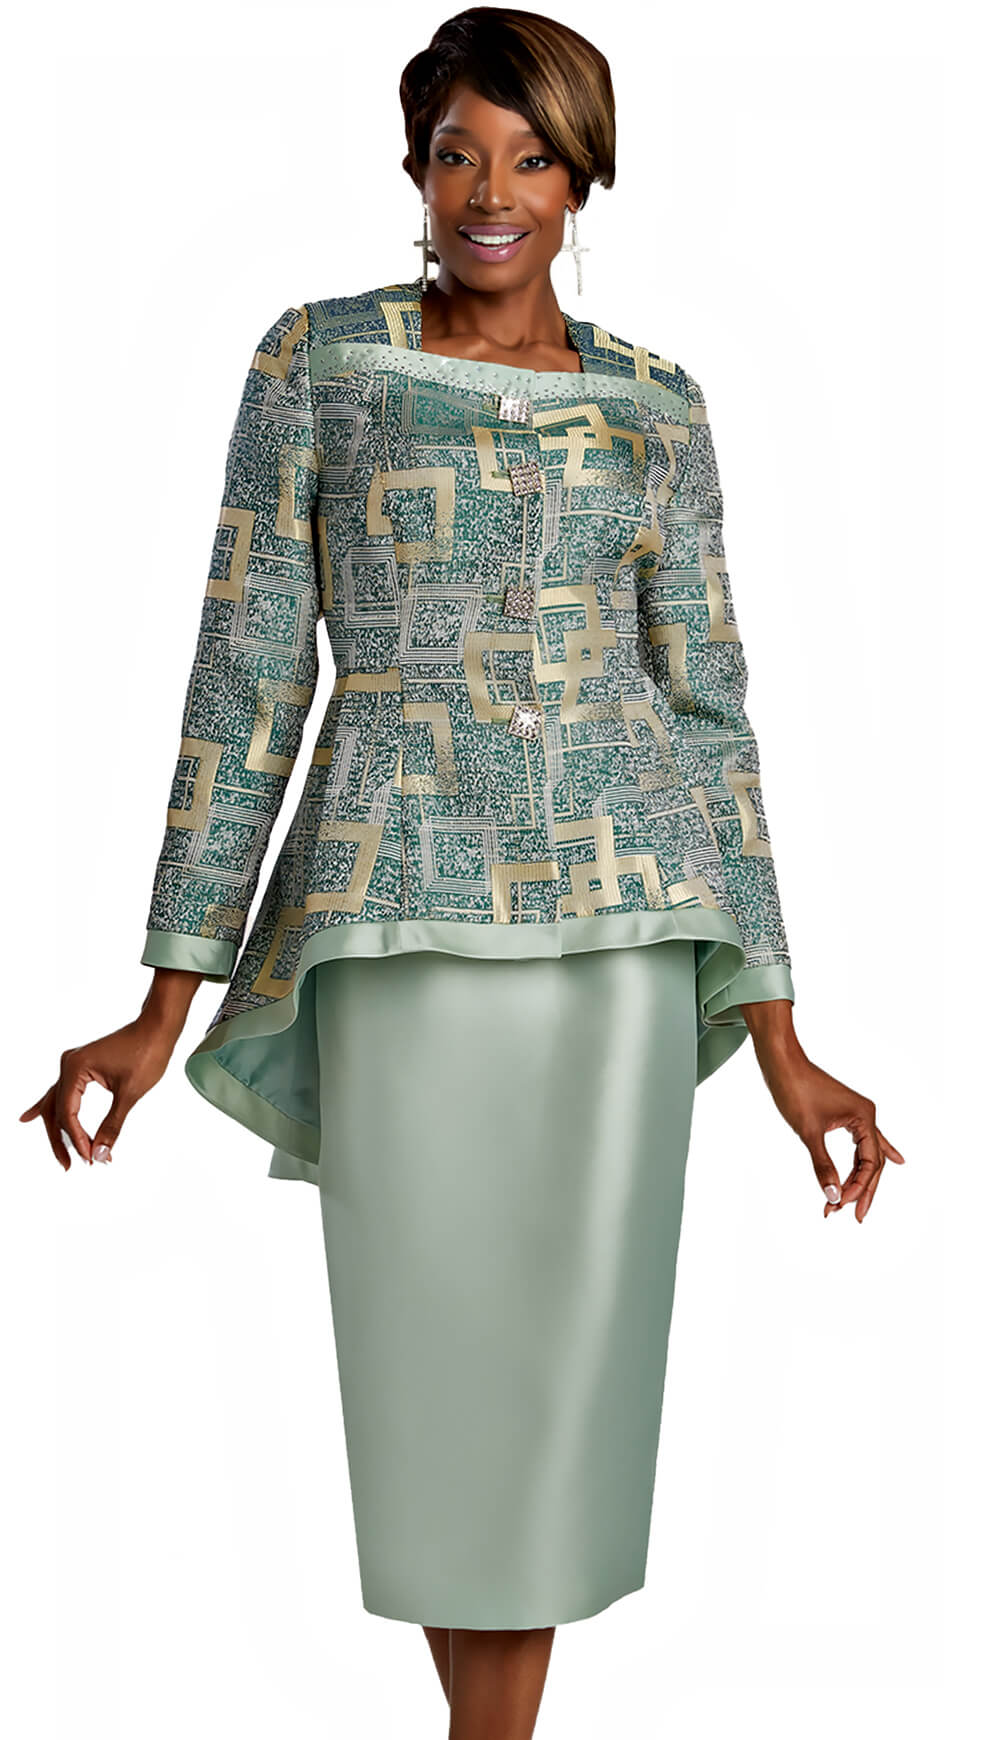 Donnavinci 2 Piece Skirt Suit 5839-MNT Size 8-20